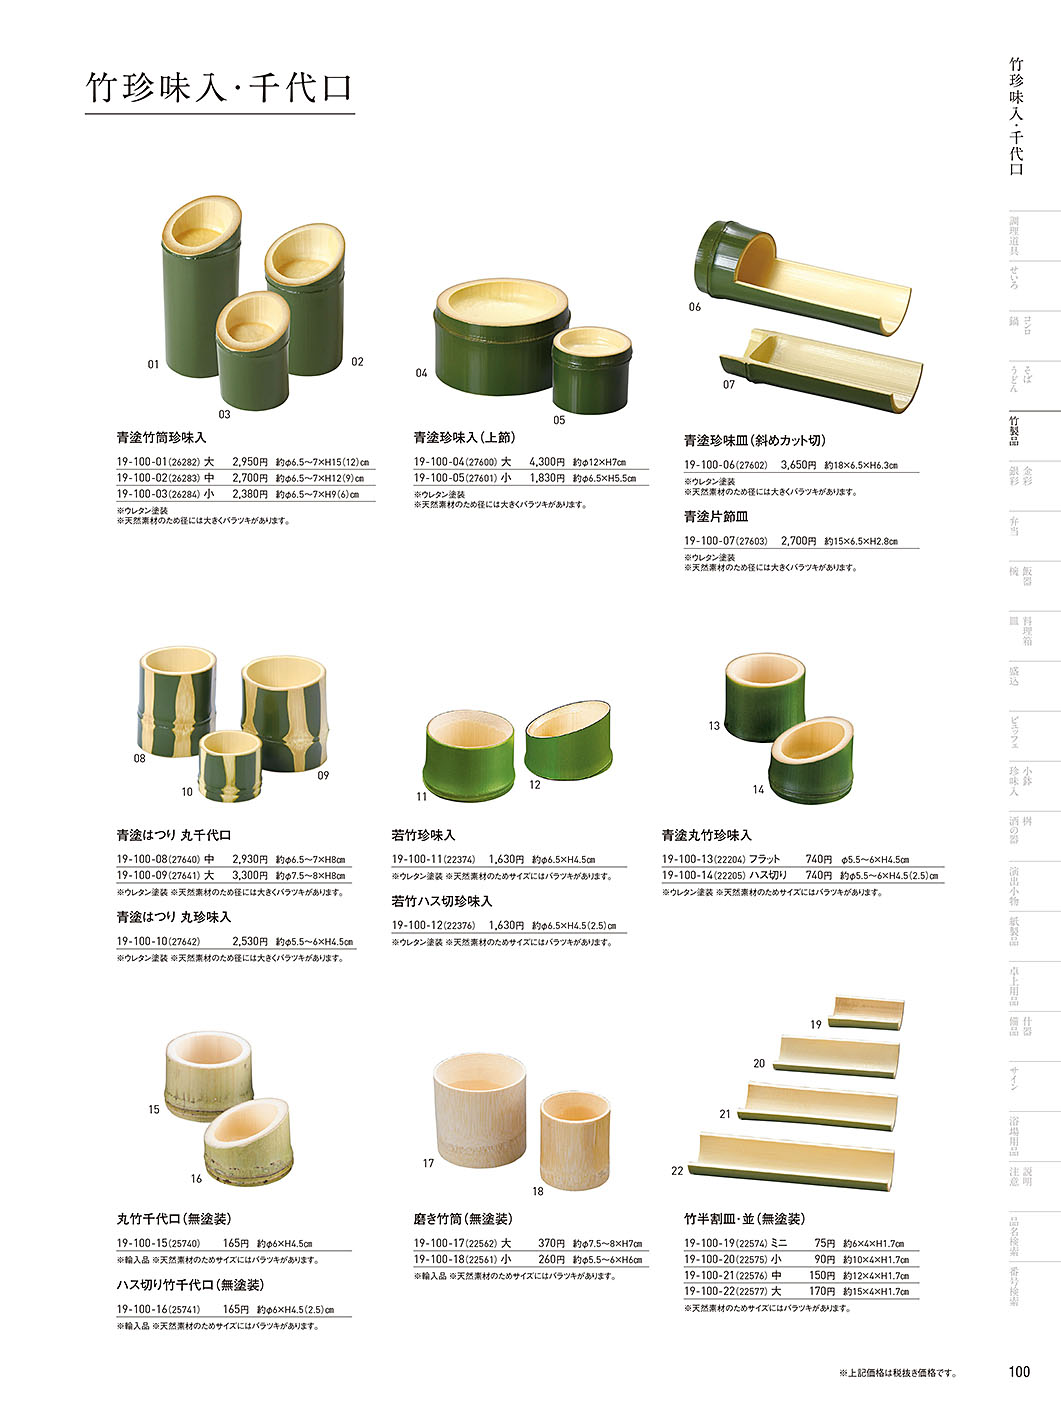 和食器カタログ P.100-竹製品／竹盛器